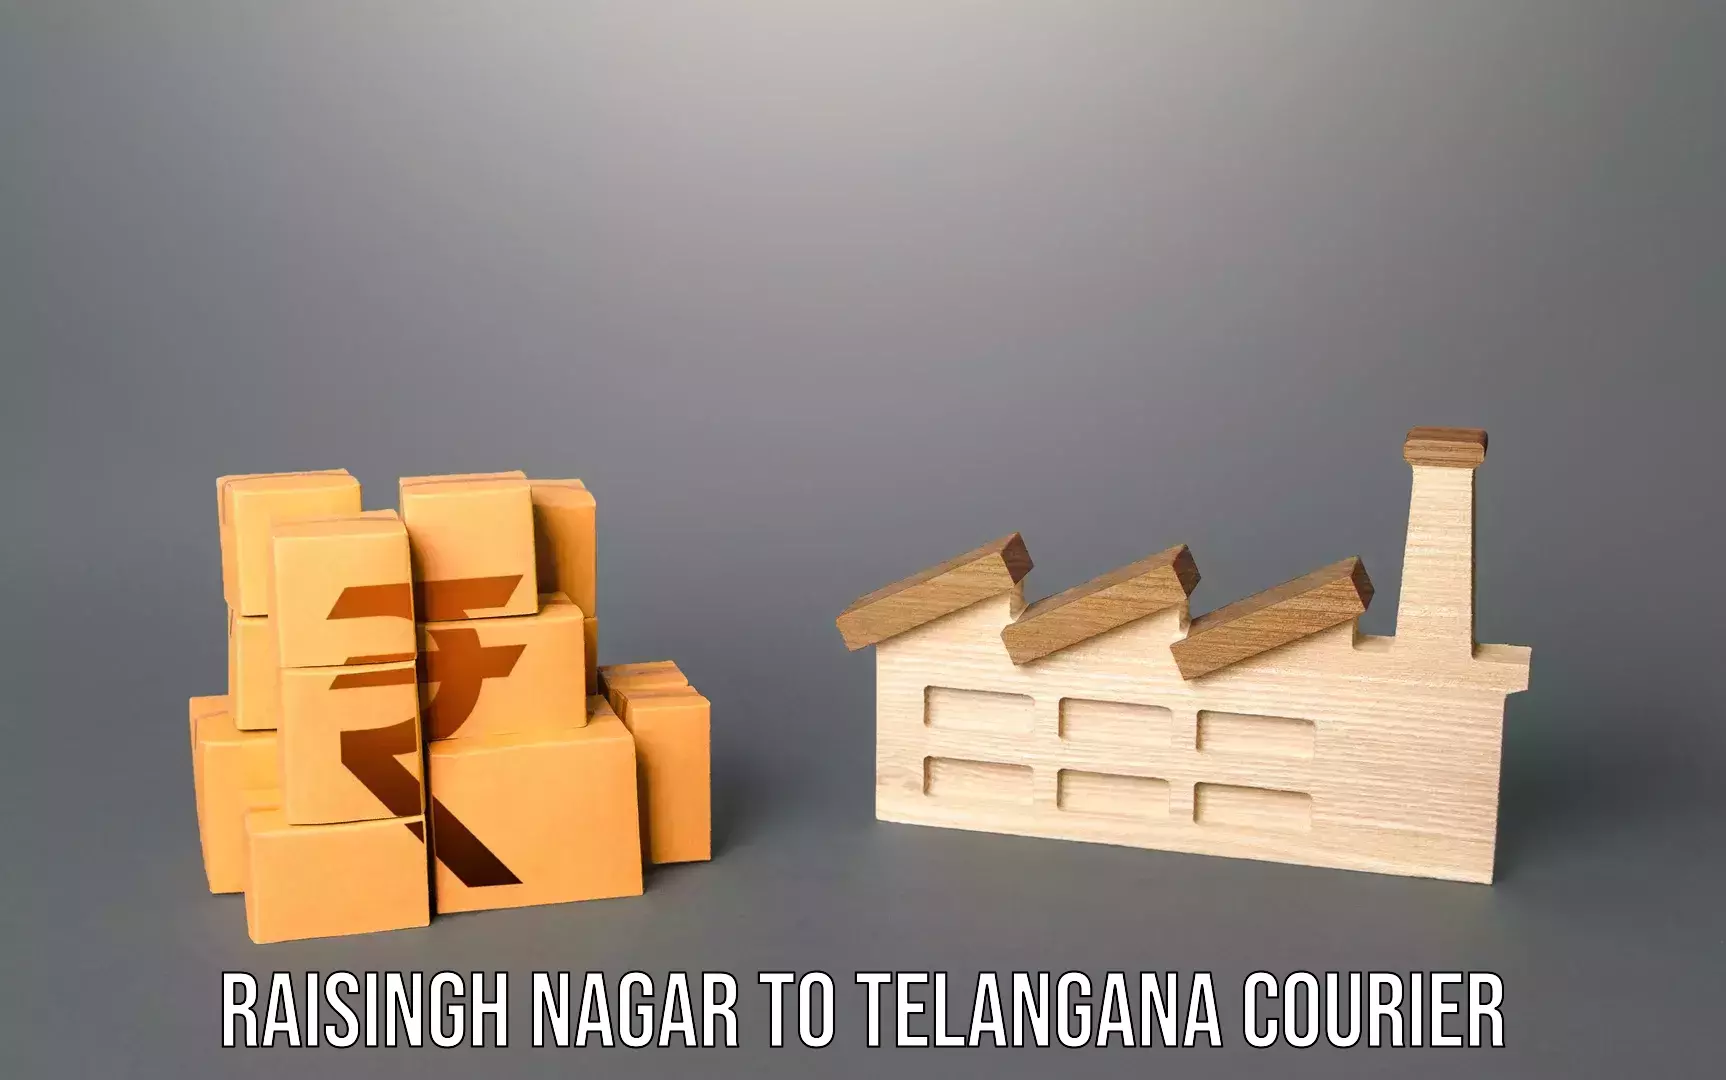 Baggage courier operations Raisingh Nagar to Telangana